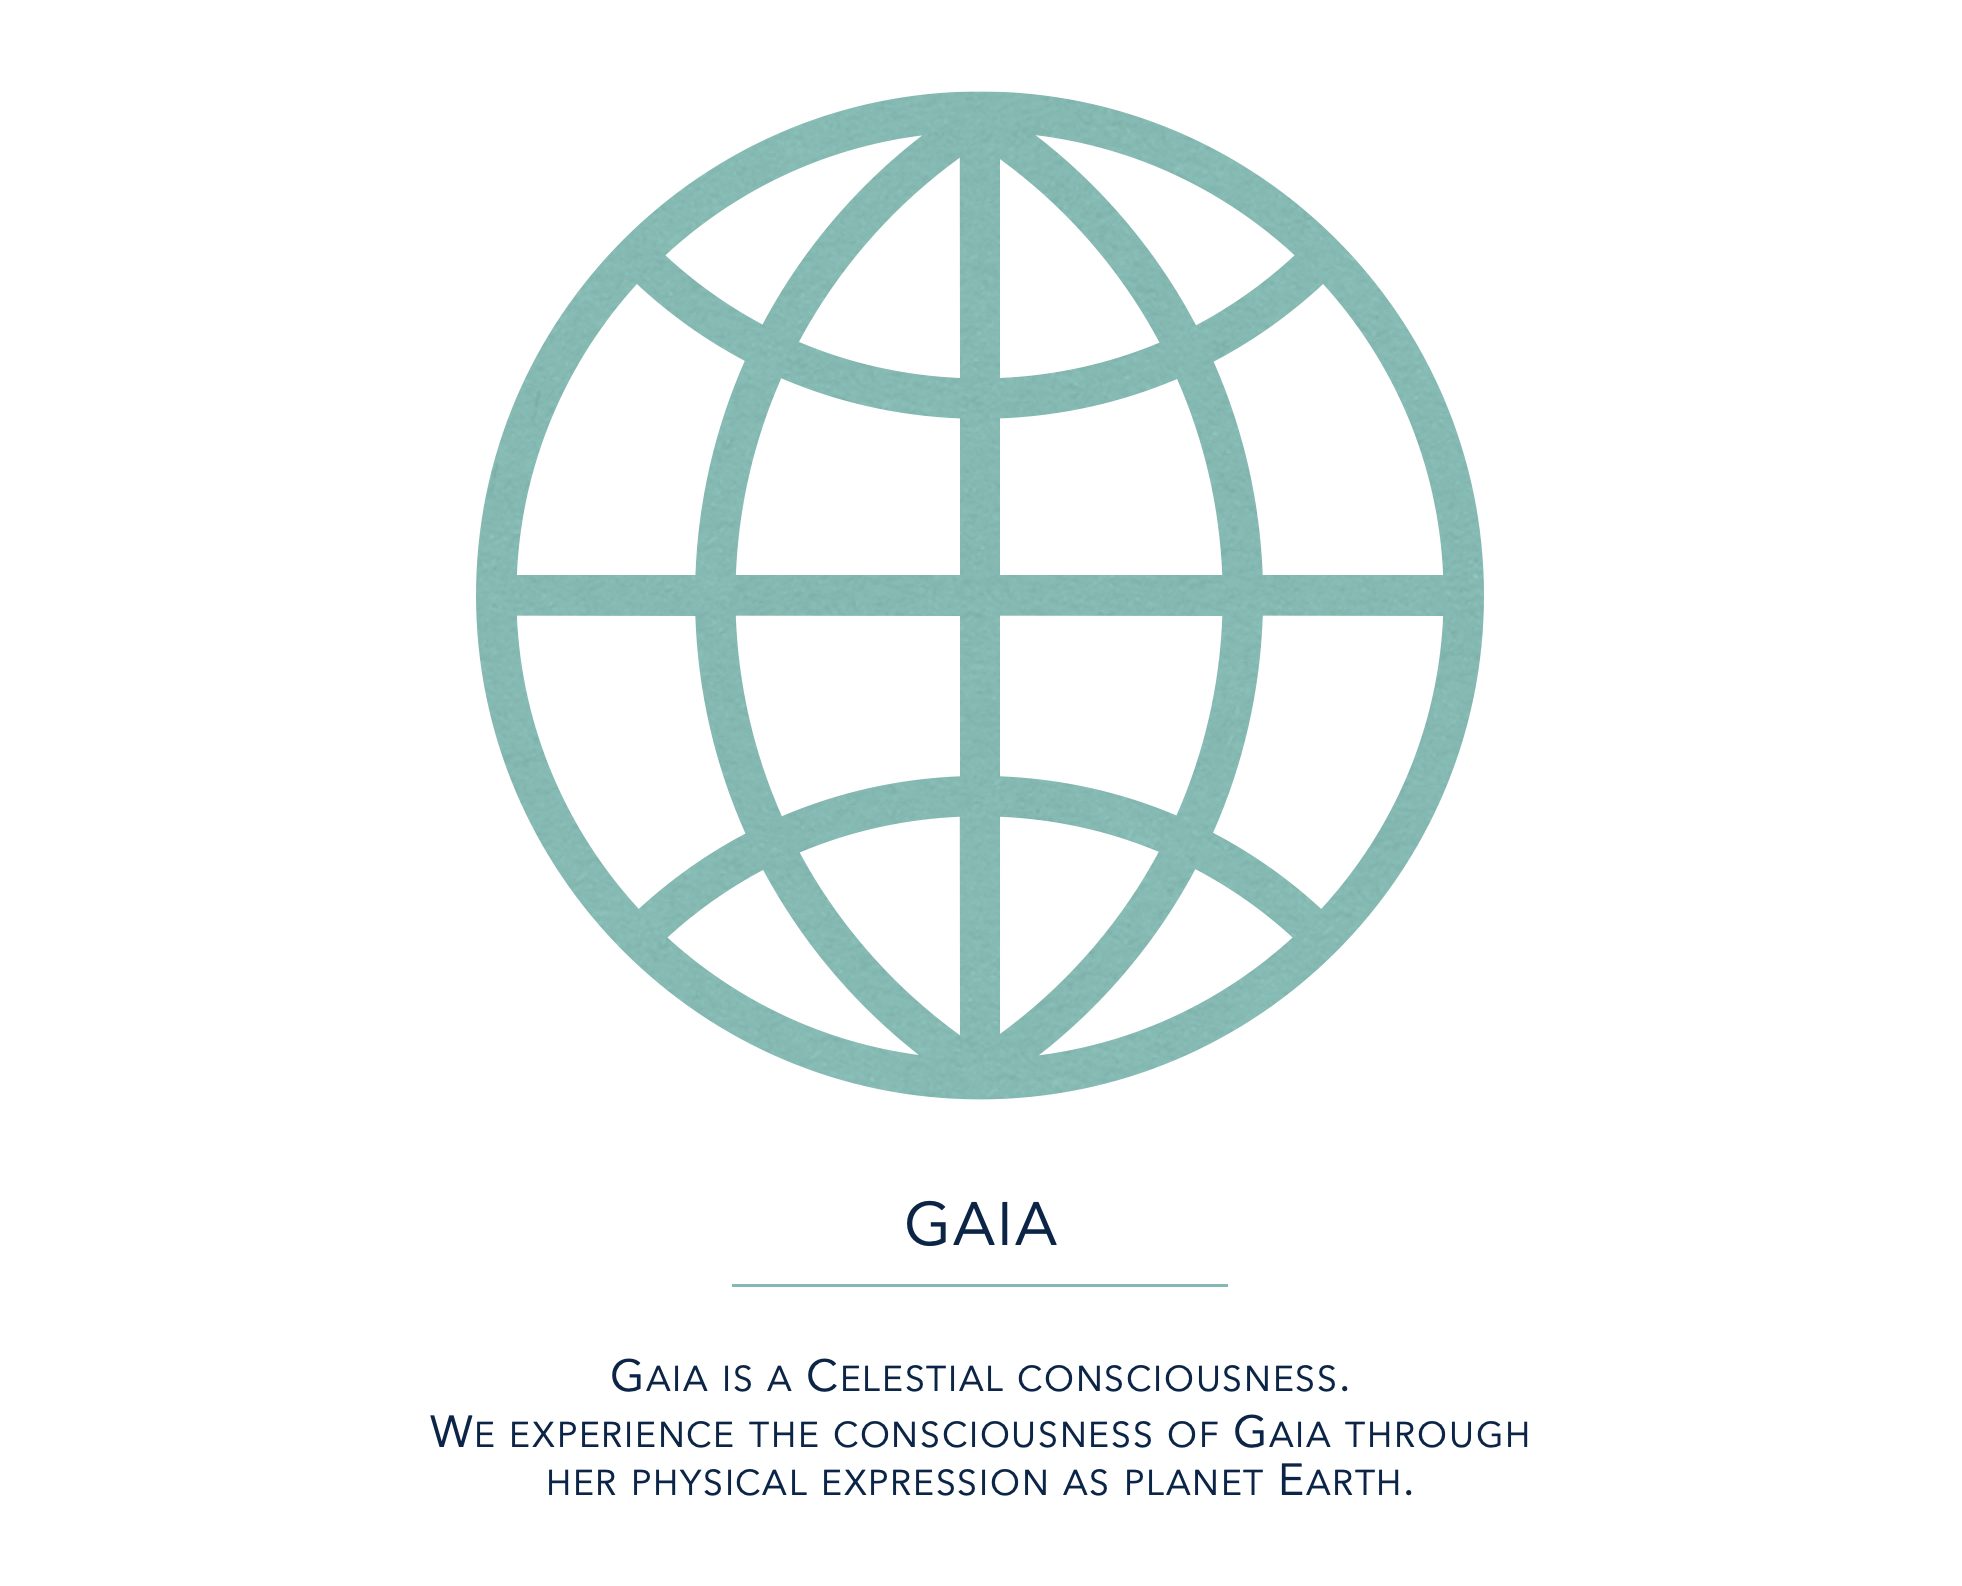 Gaia is a Celestial consciousness.